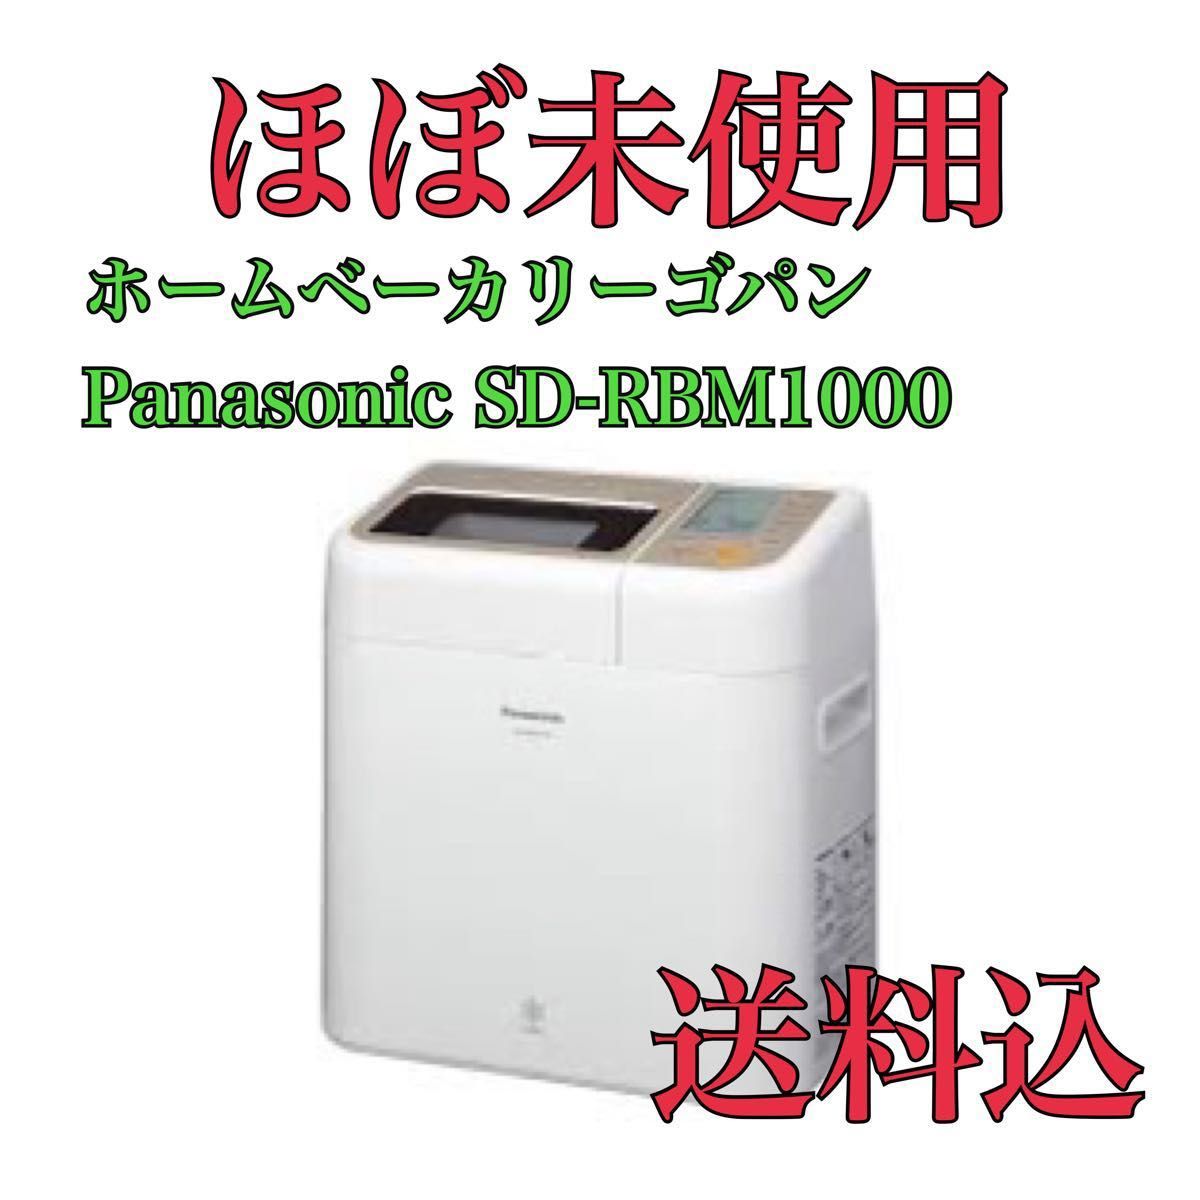 生活家電 調理機器 Panasonic ライスブレッドクッカー SD-RBM1001 GOPAN ゴパン 